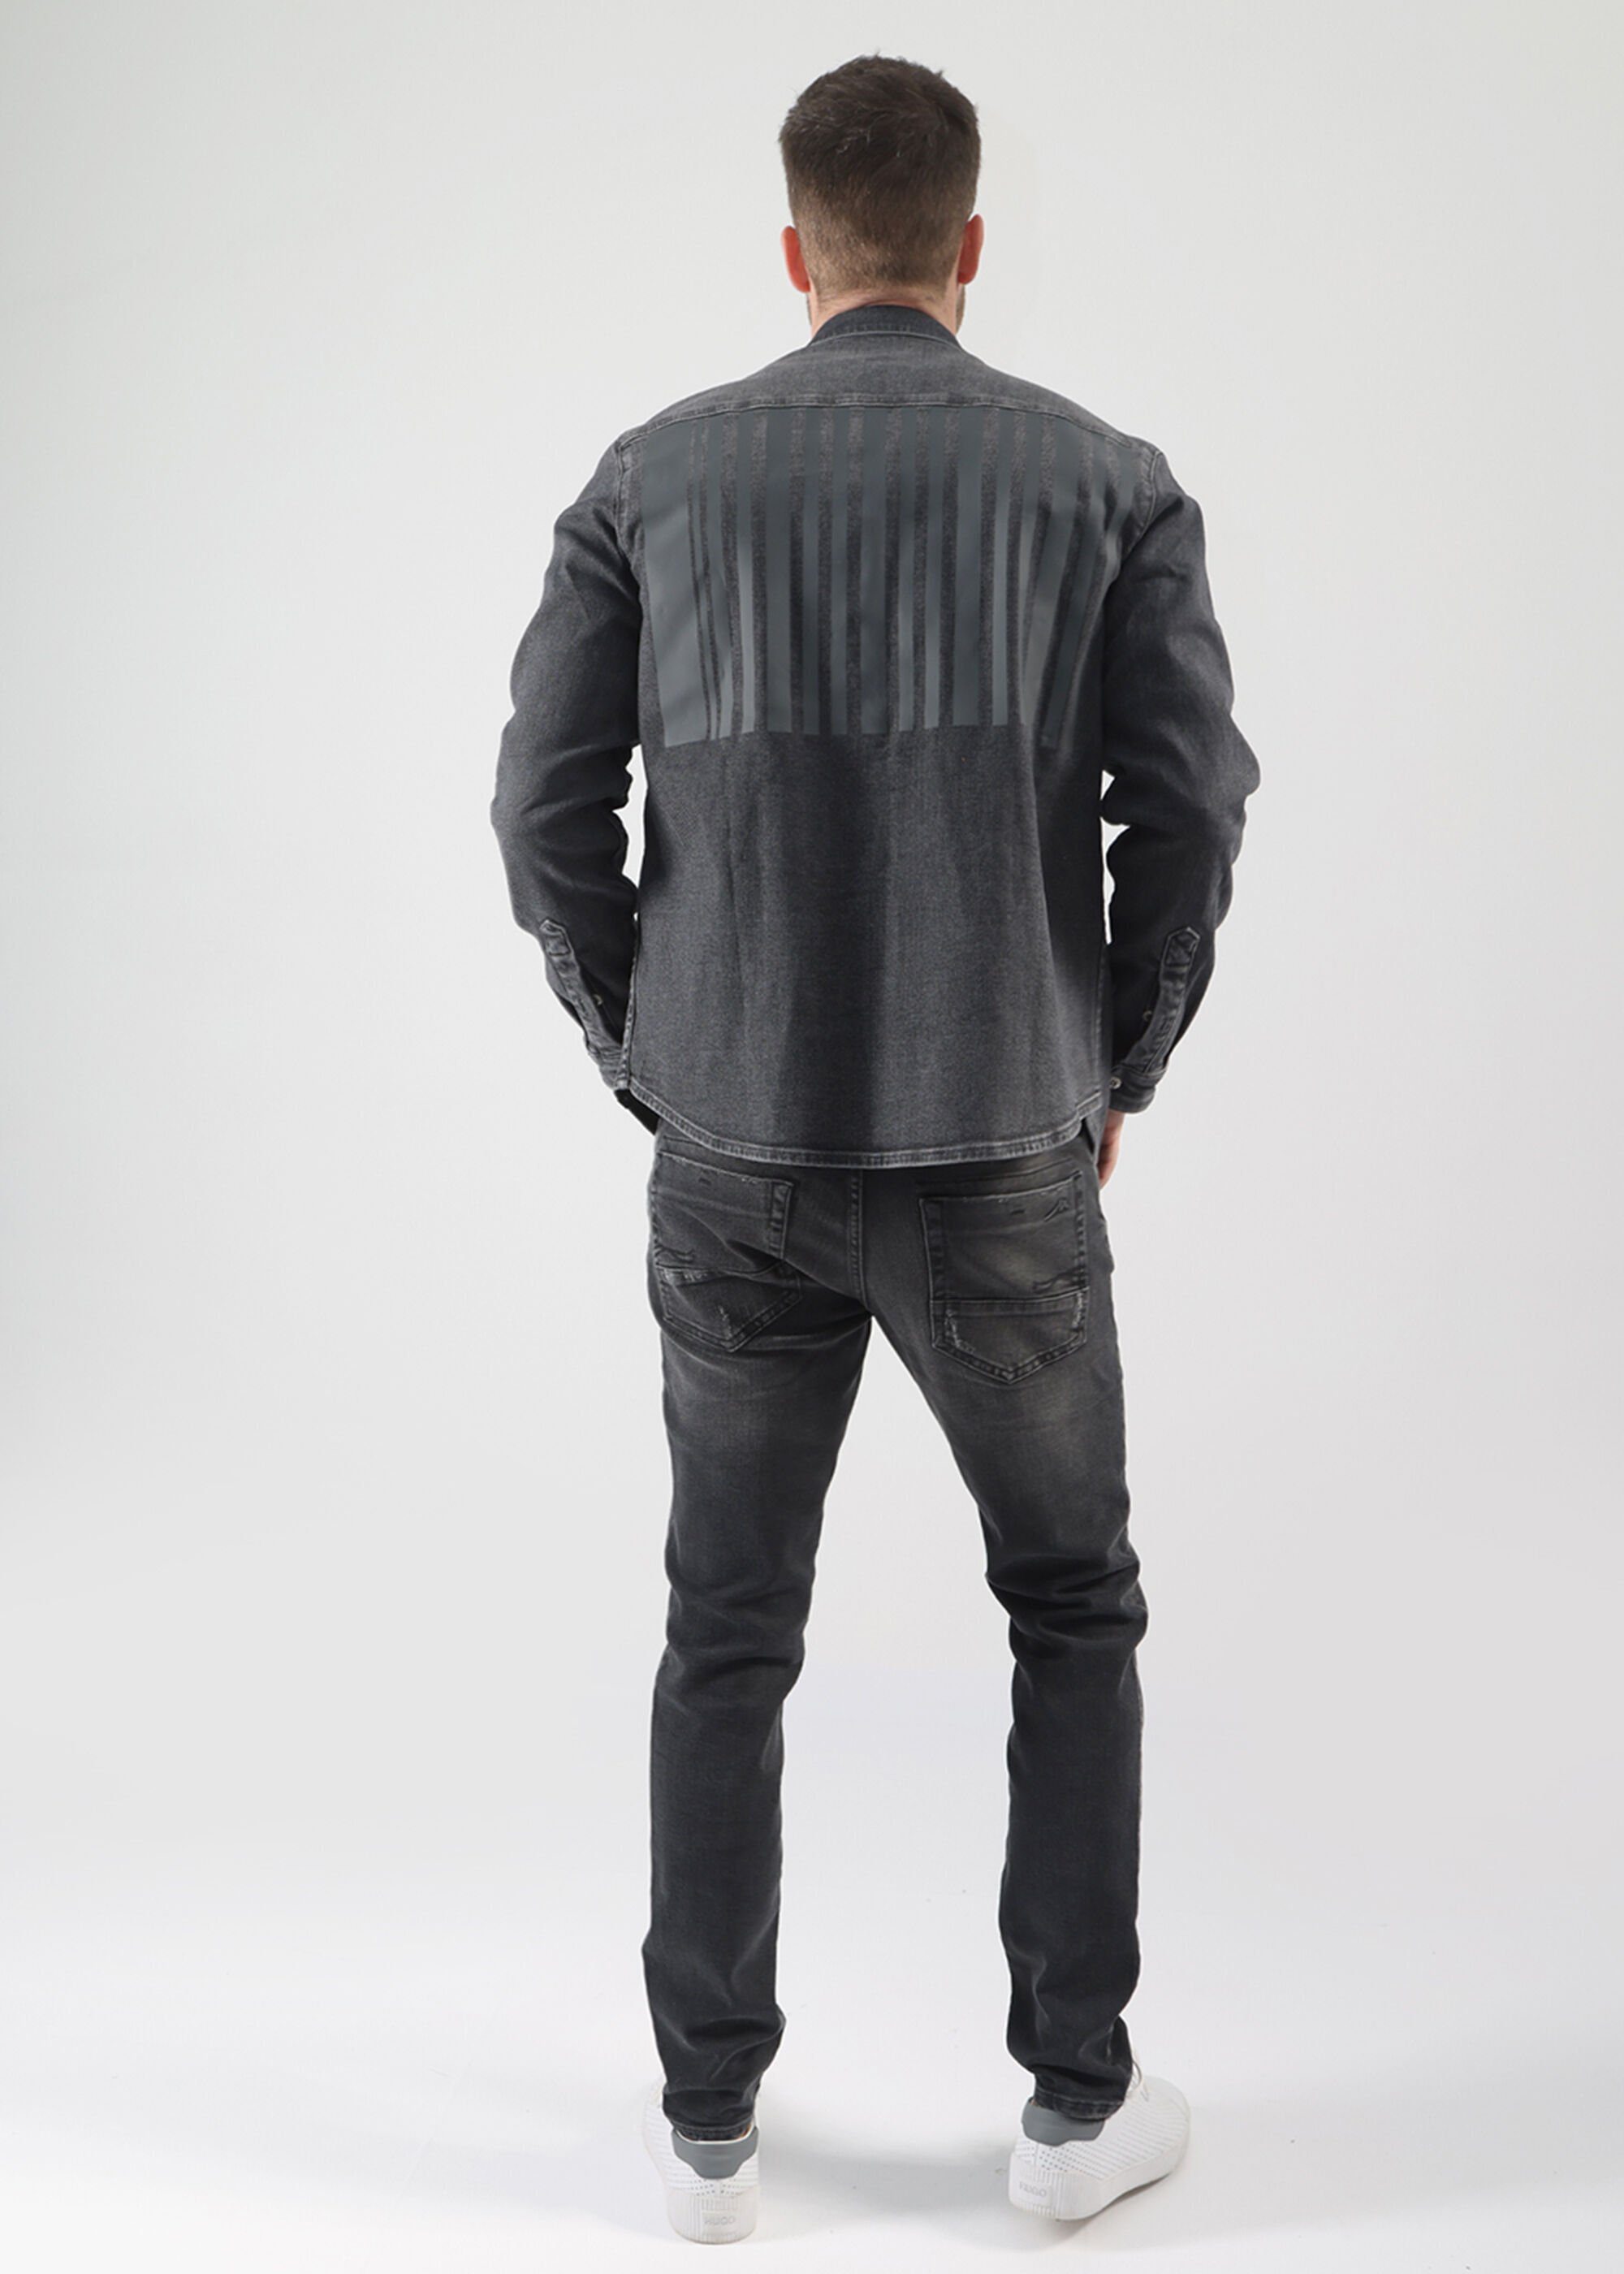 Miracle of Denim 5-Pocket-Jeans Look im Black Tenth Used Marcel